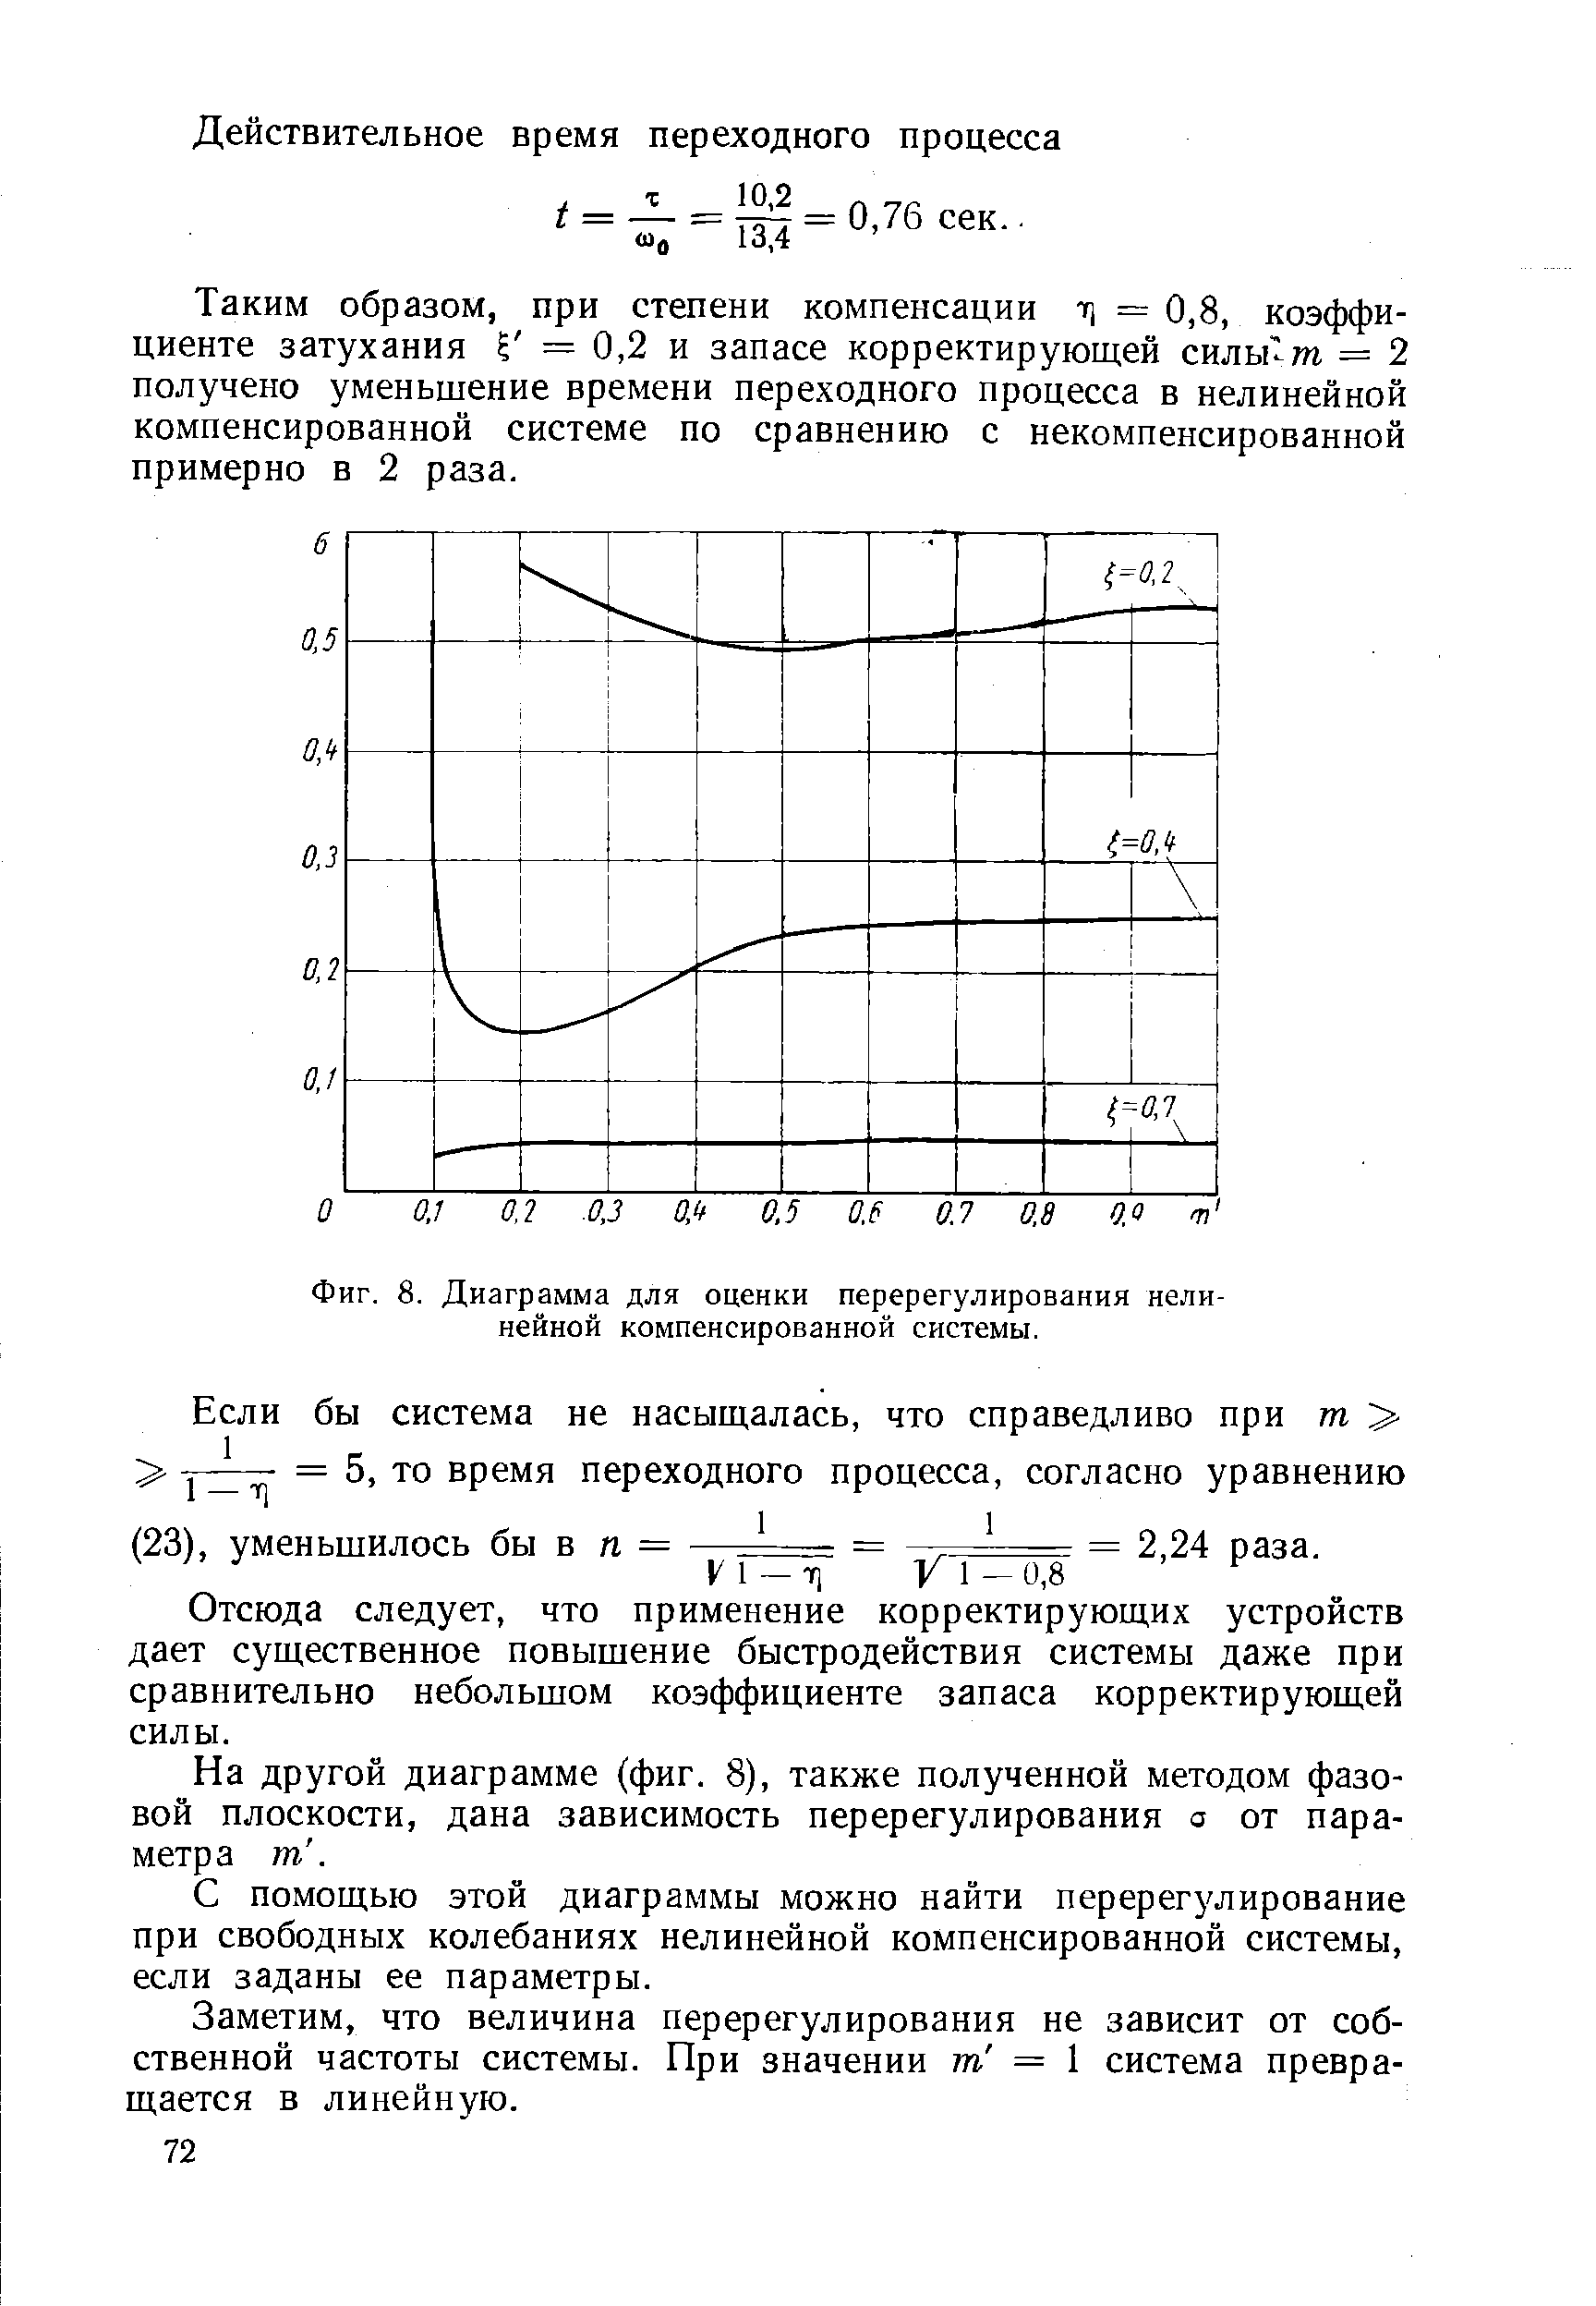 Фиг. 8. Диаграмма для оценки перерегулирования нелинейной компенсированной системы.
